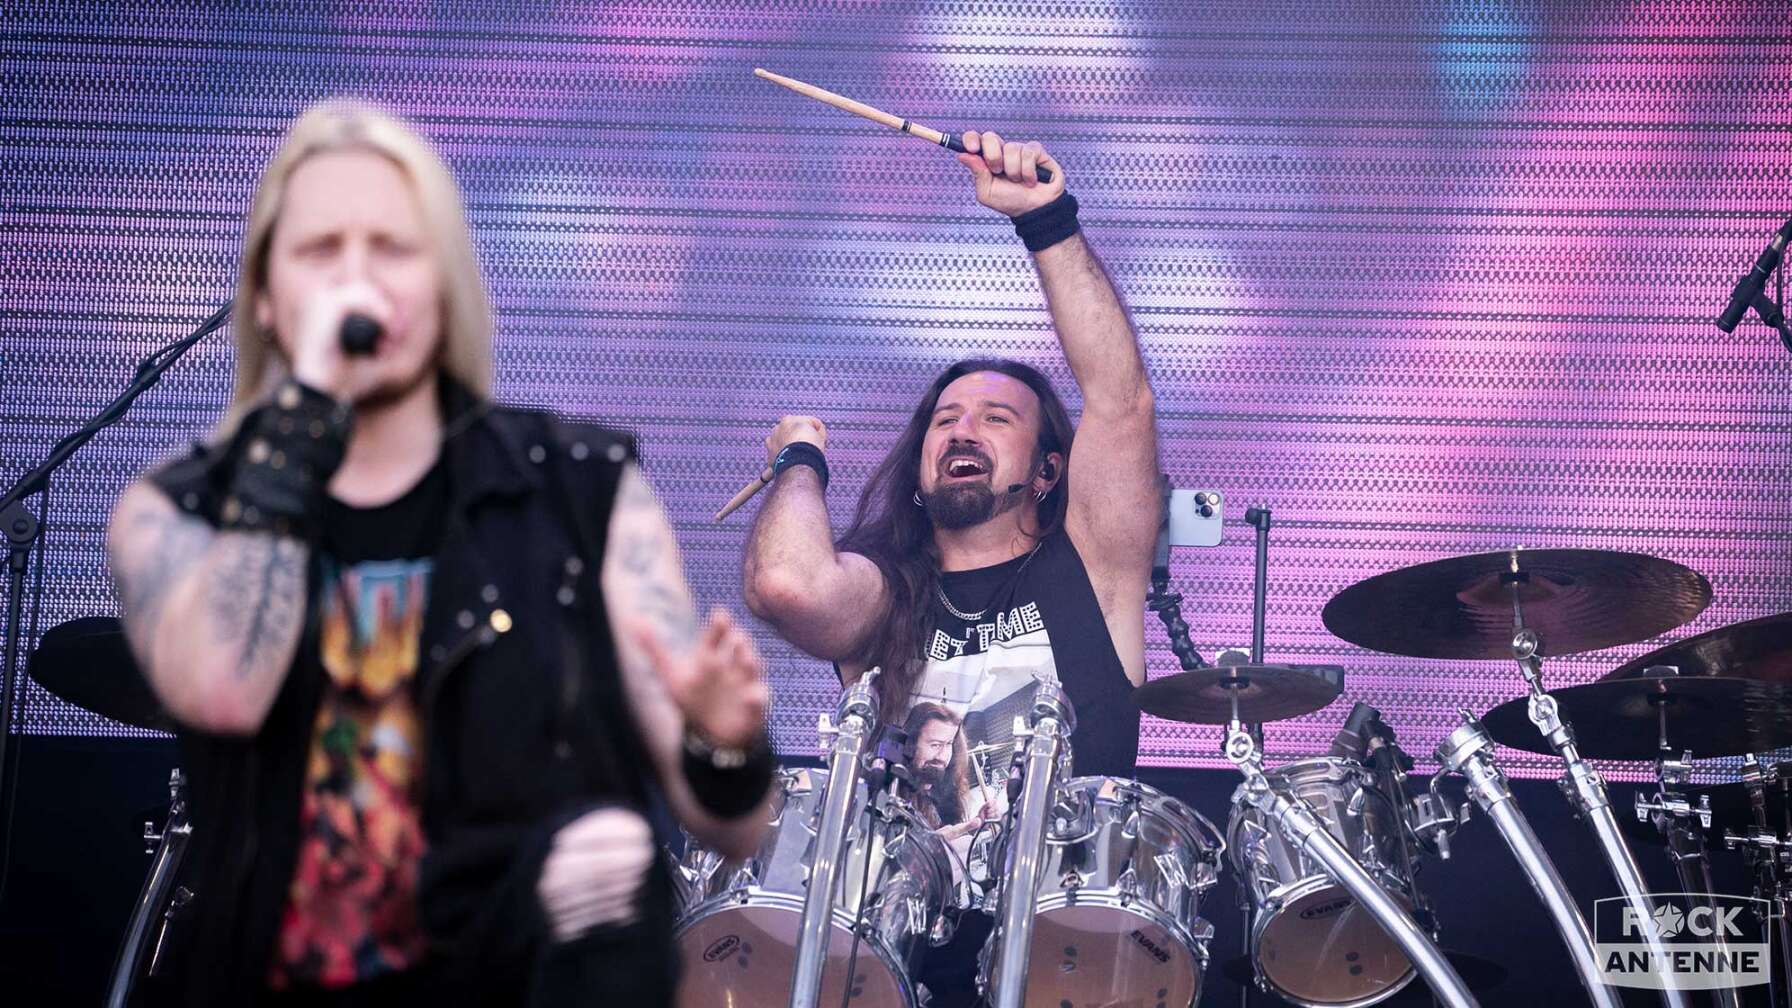 Der Schlagzeuger der Band Dragonforce auf der Bühne des Summer Breeze Open Airs. Vor ihm sieht man leicht verschwommen den Sänger der Band.